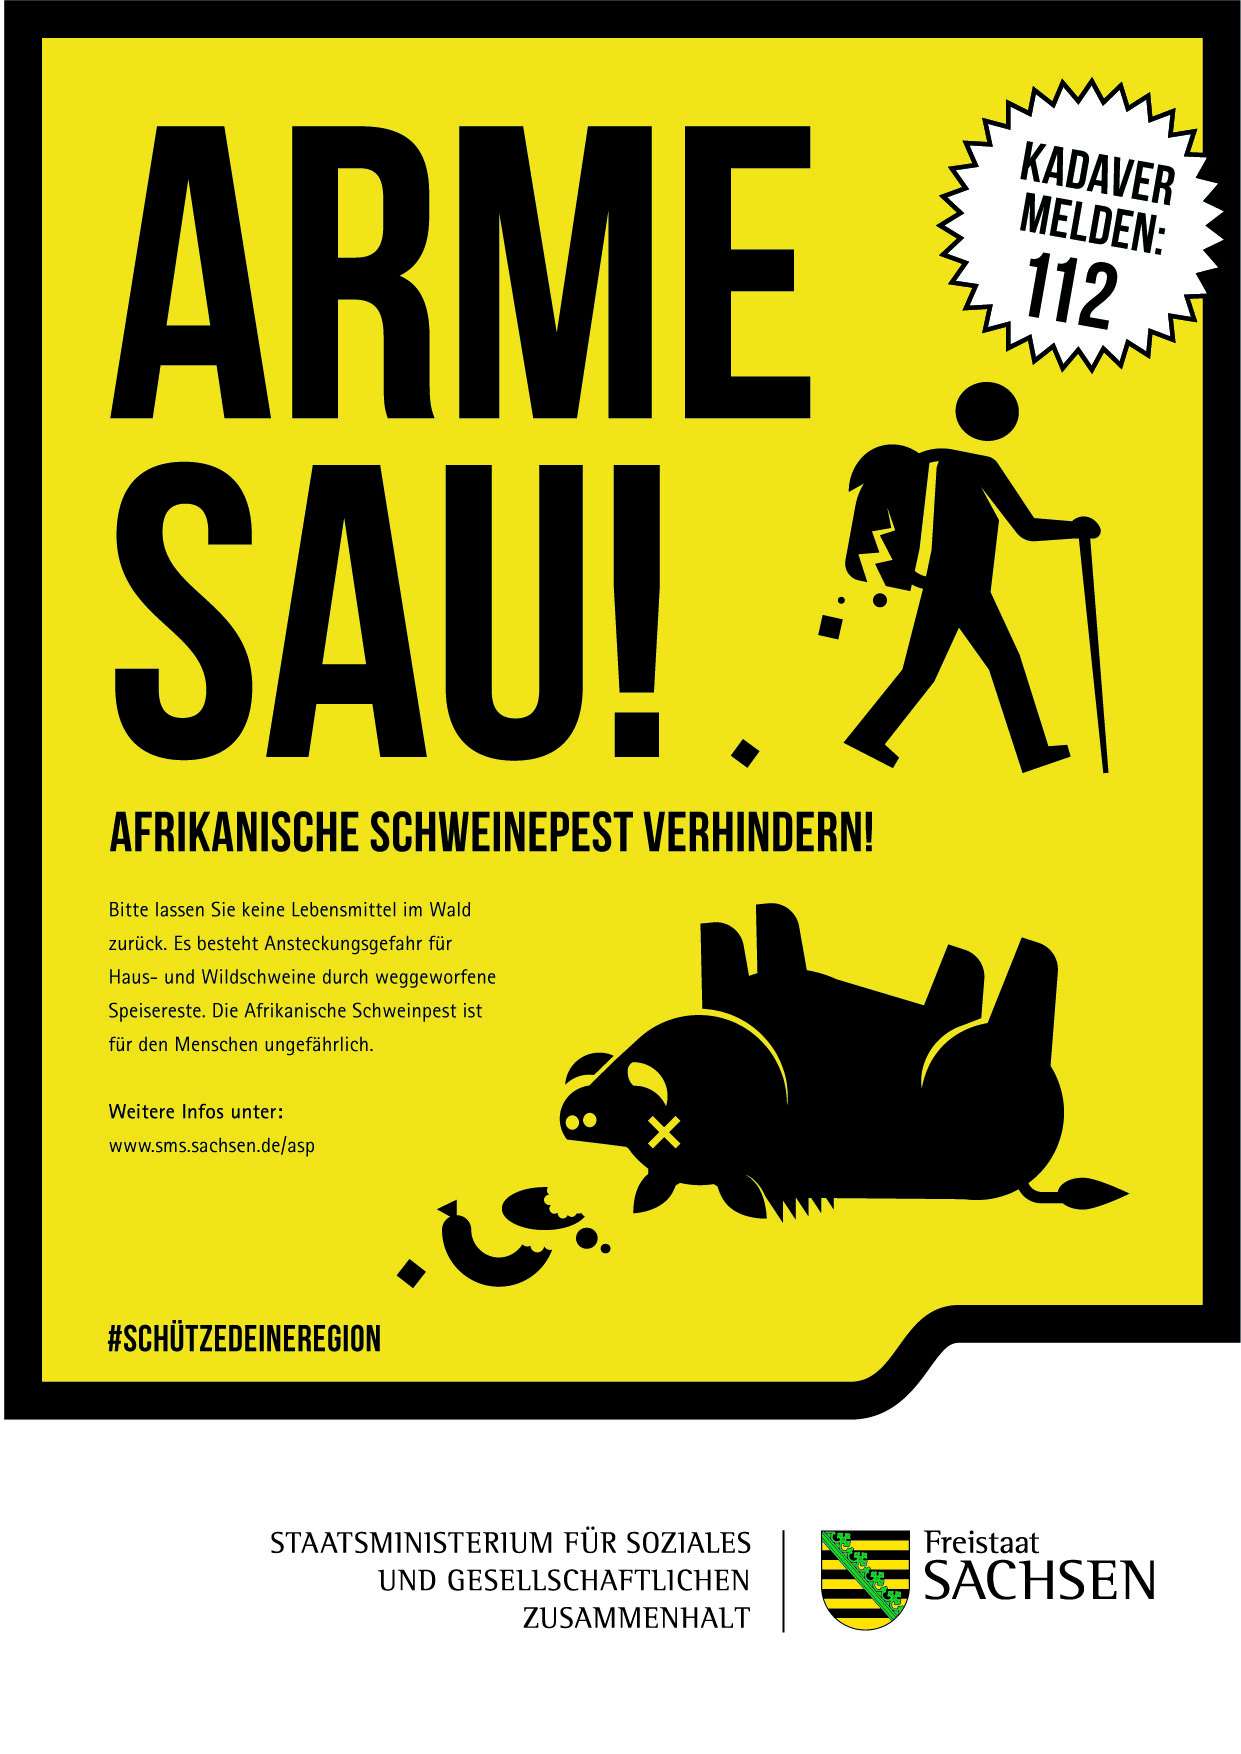 Ein in warnender Optik gestaltetes Plakatmotiv mit der Überschrift "Arme Sau! Afrikanische Schweinepest verhindern!"